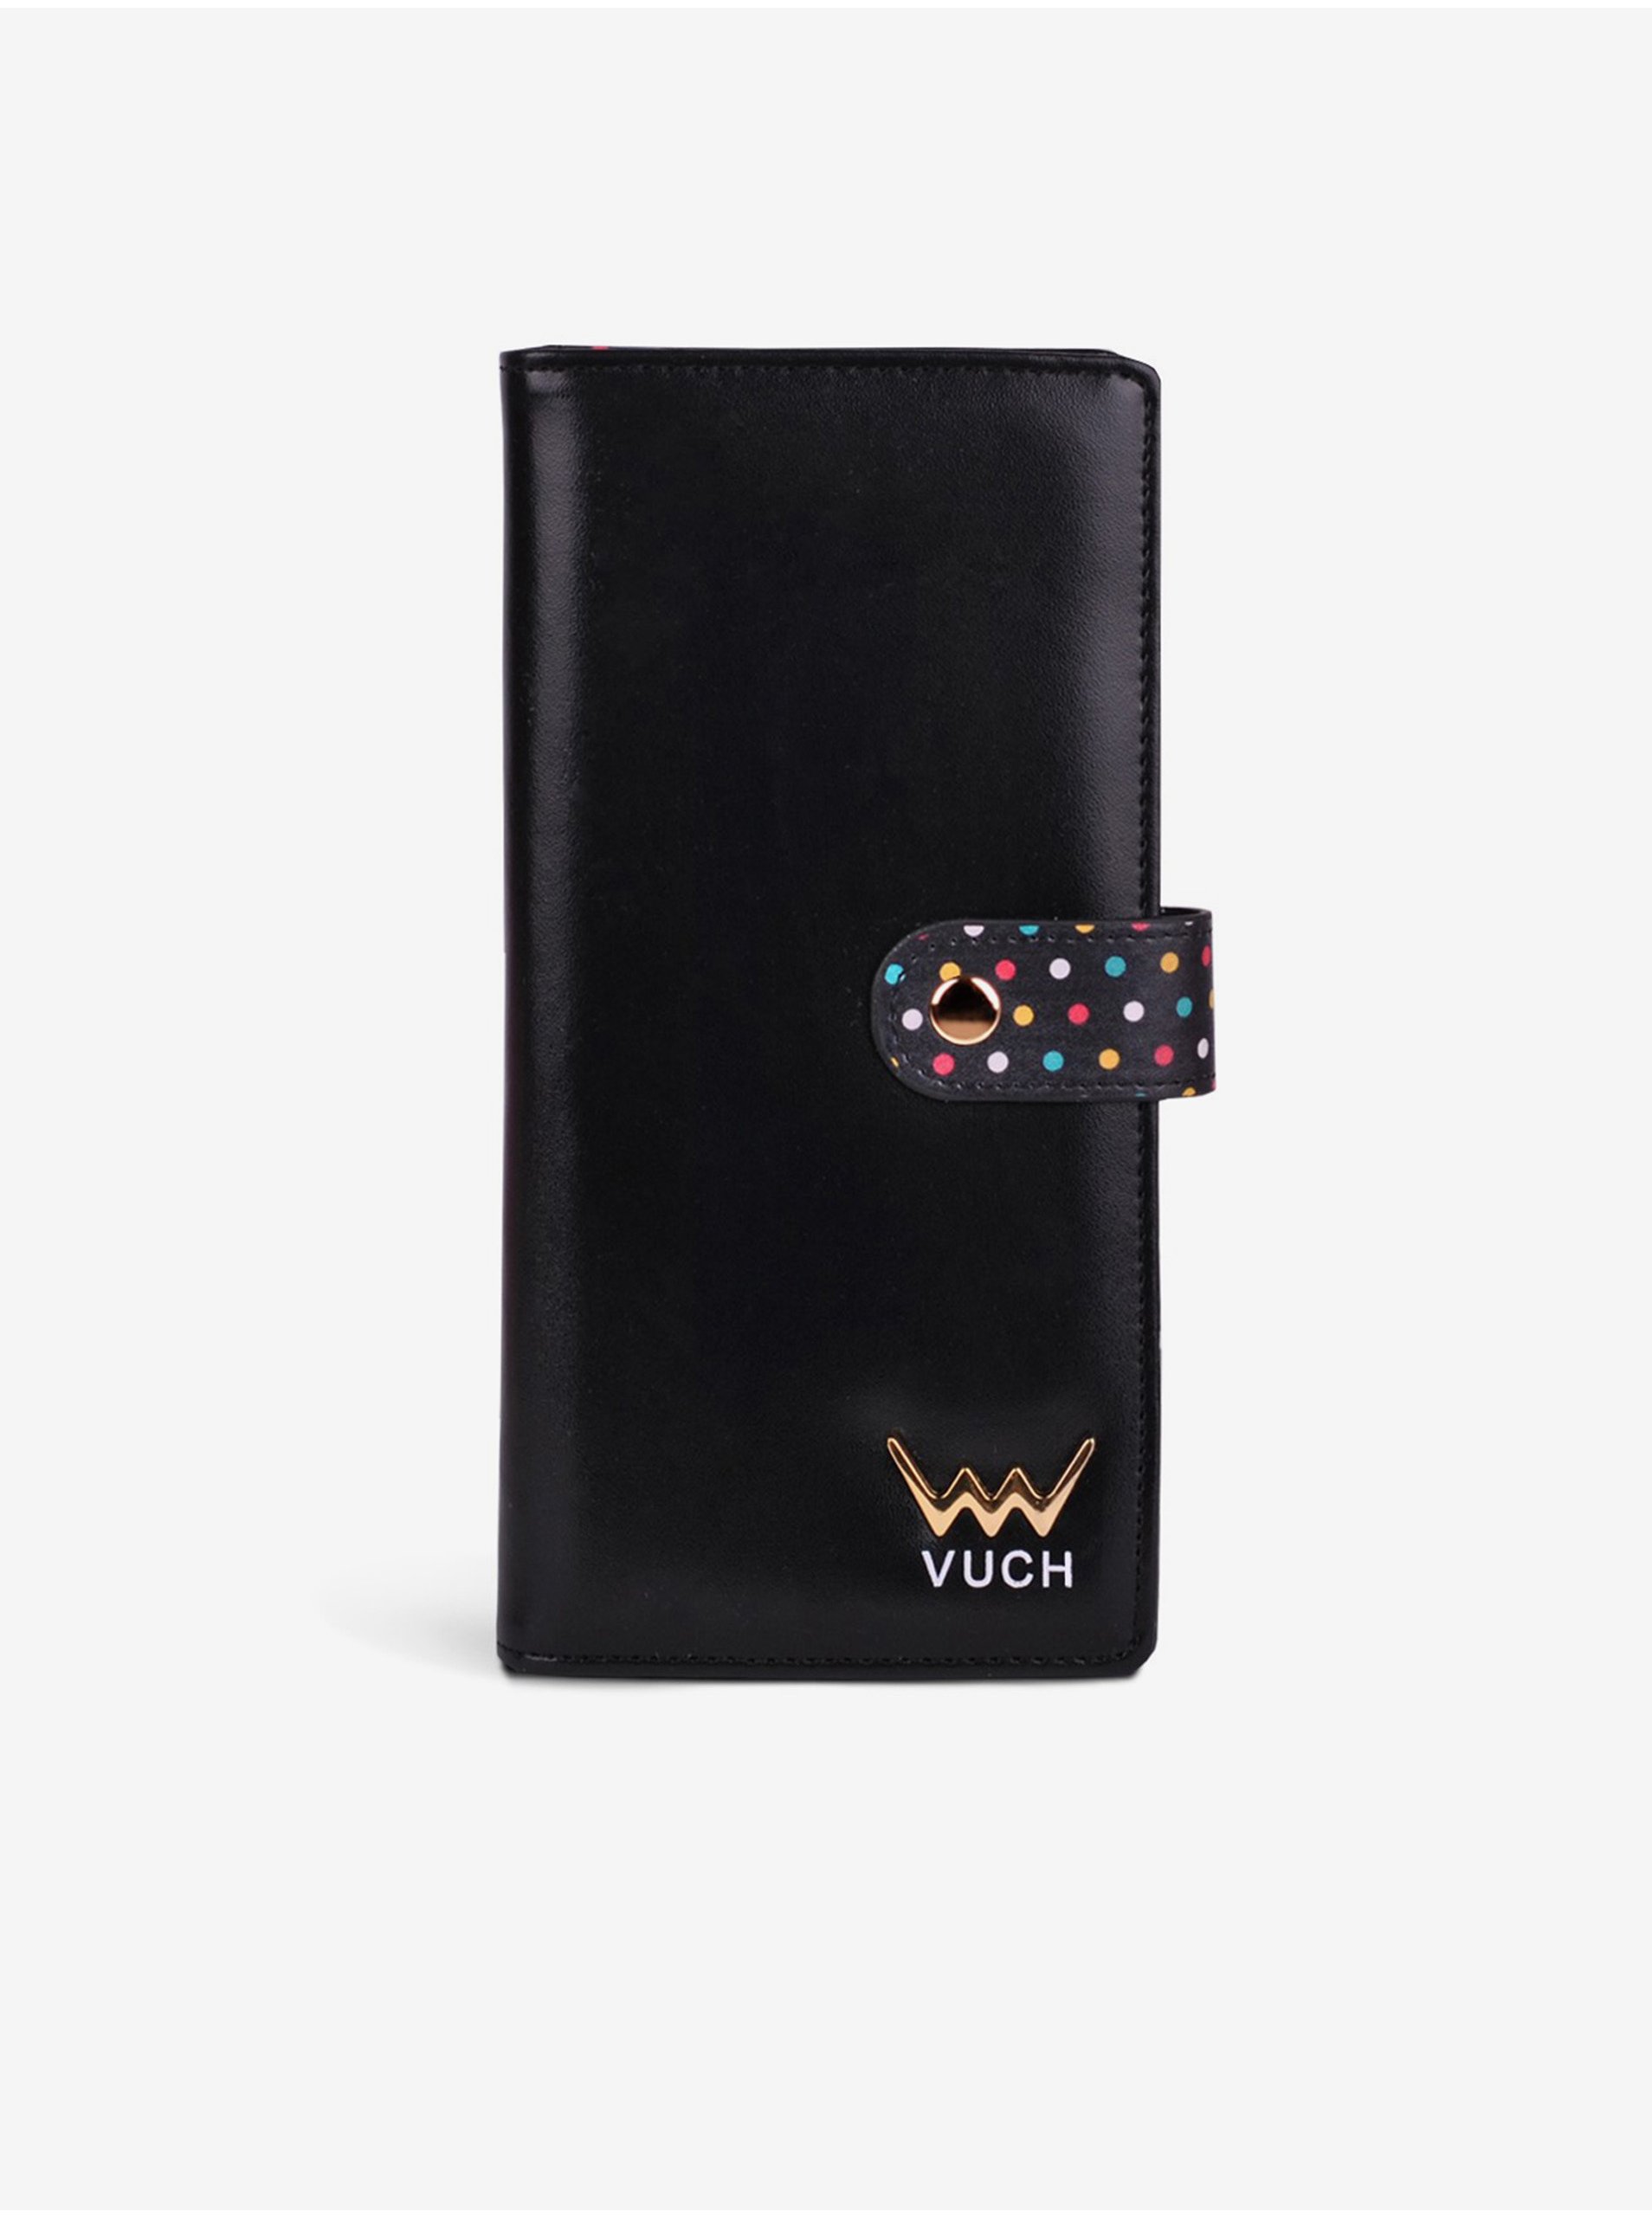 E-shop Vuch čierna peňaženka Hermione